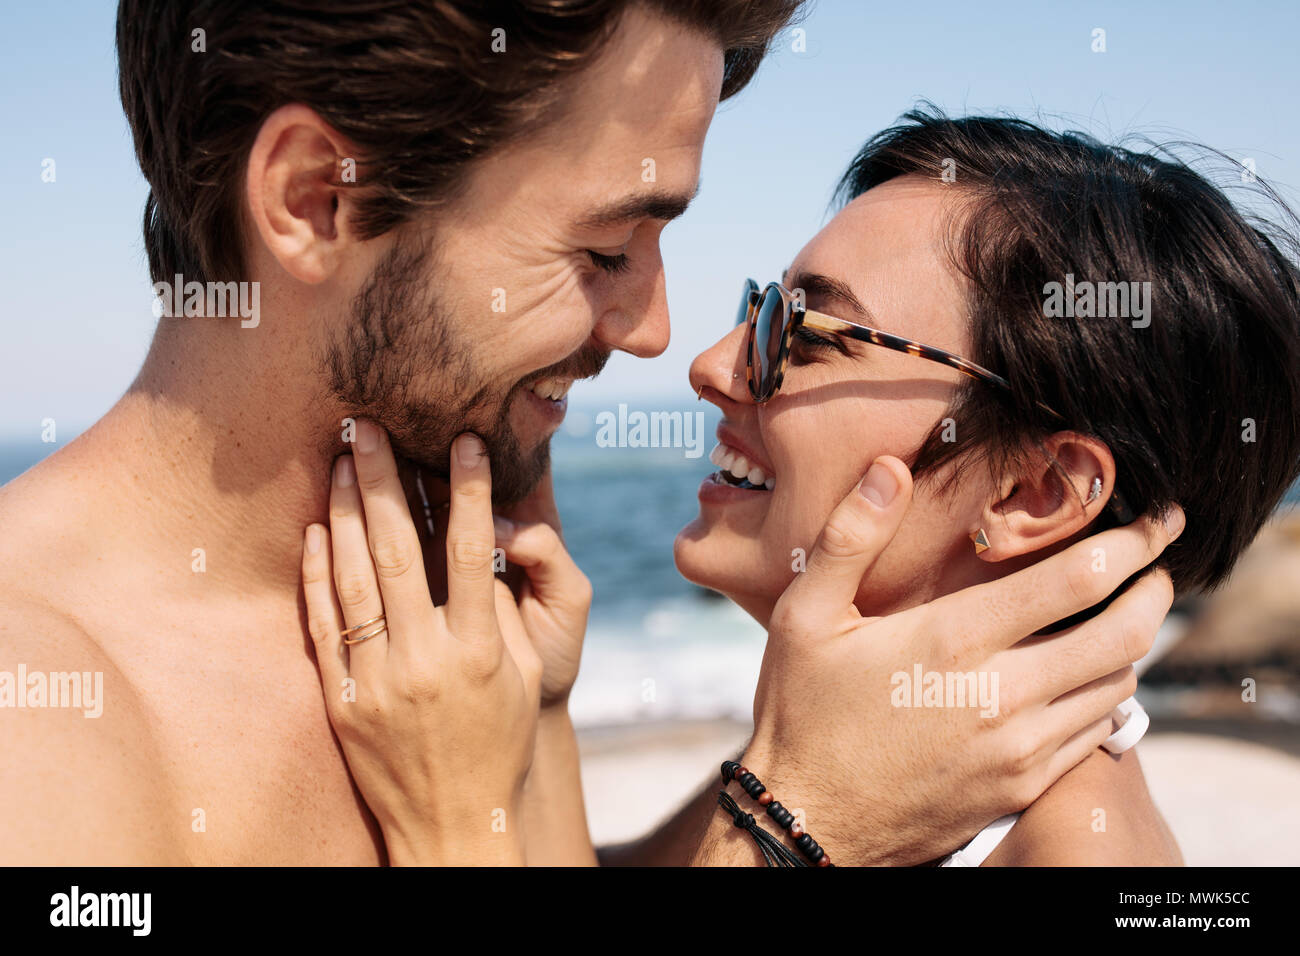 Paar jedes andere Holding stehen auf dem Strand zu küssen. Touristische Paar in eine glückliche und romantische Stimmung genießen einen Urlaub. Stockfoto